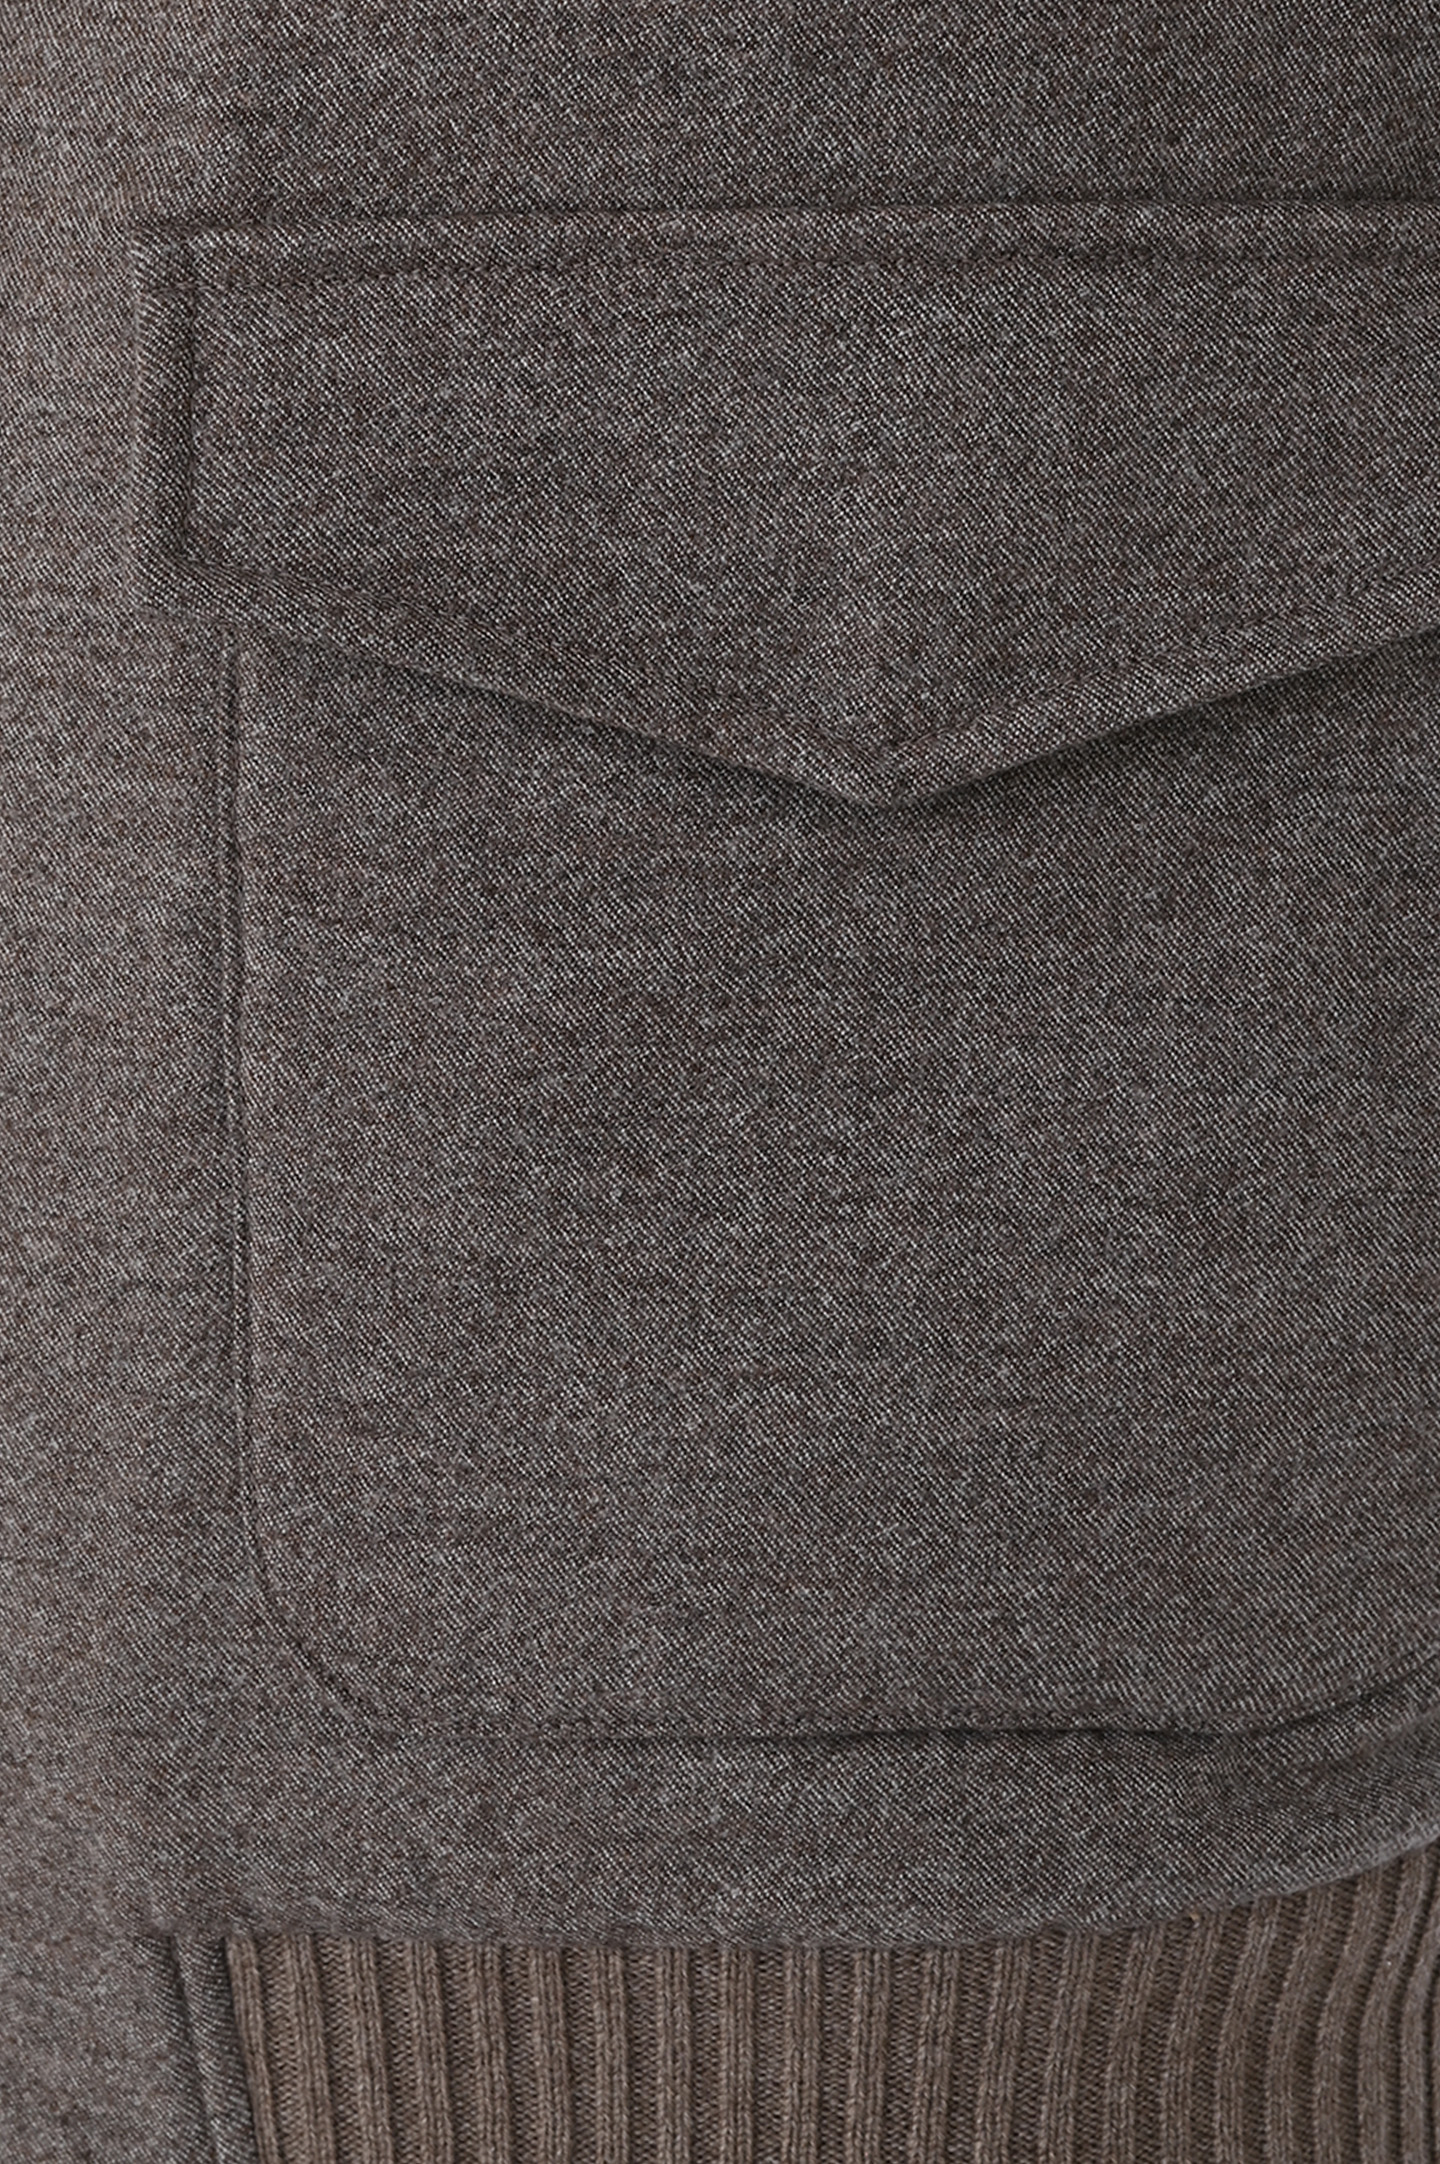 Куртка DORIANI CASHMERE A385, цвет: Коричневый, Мужской